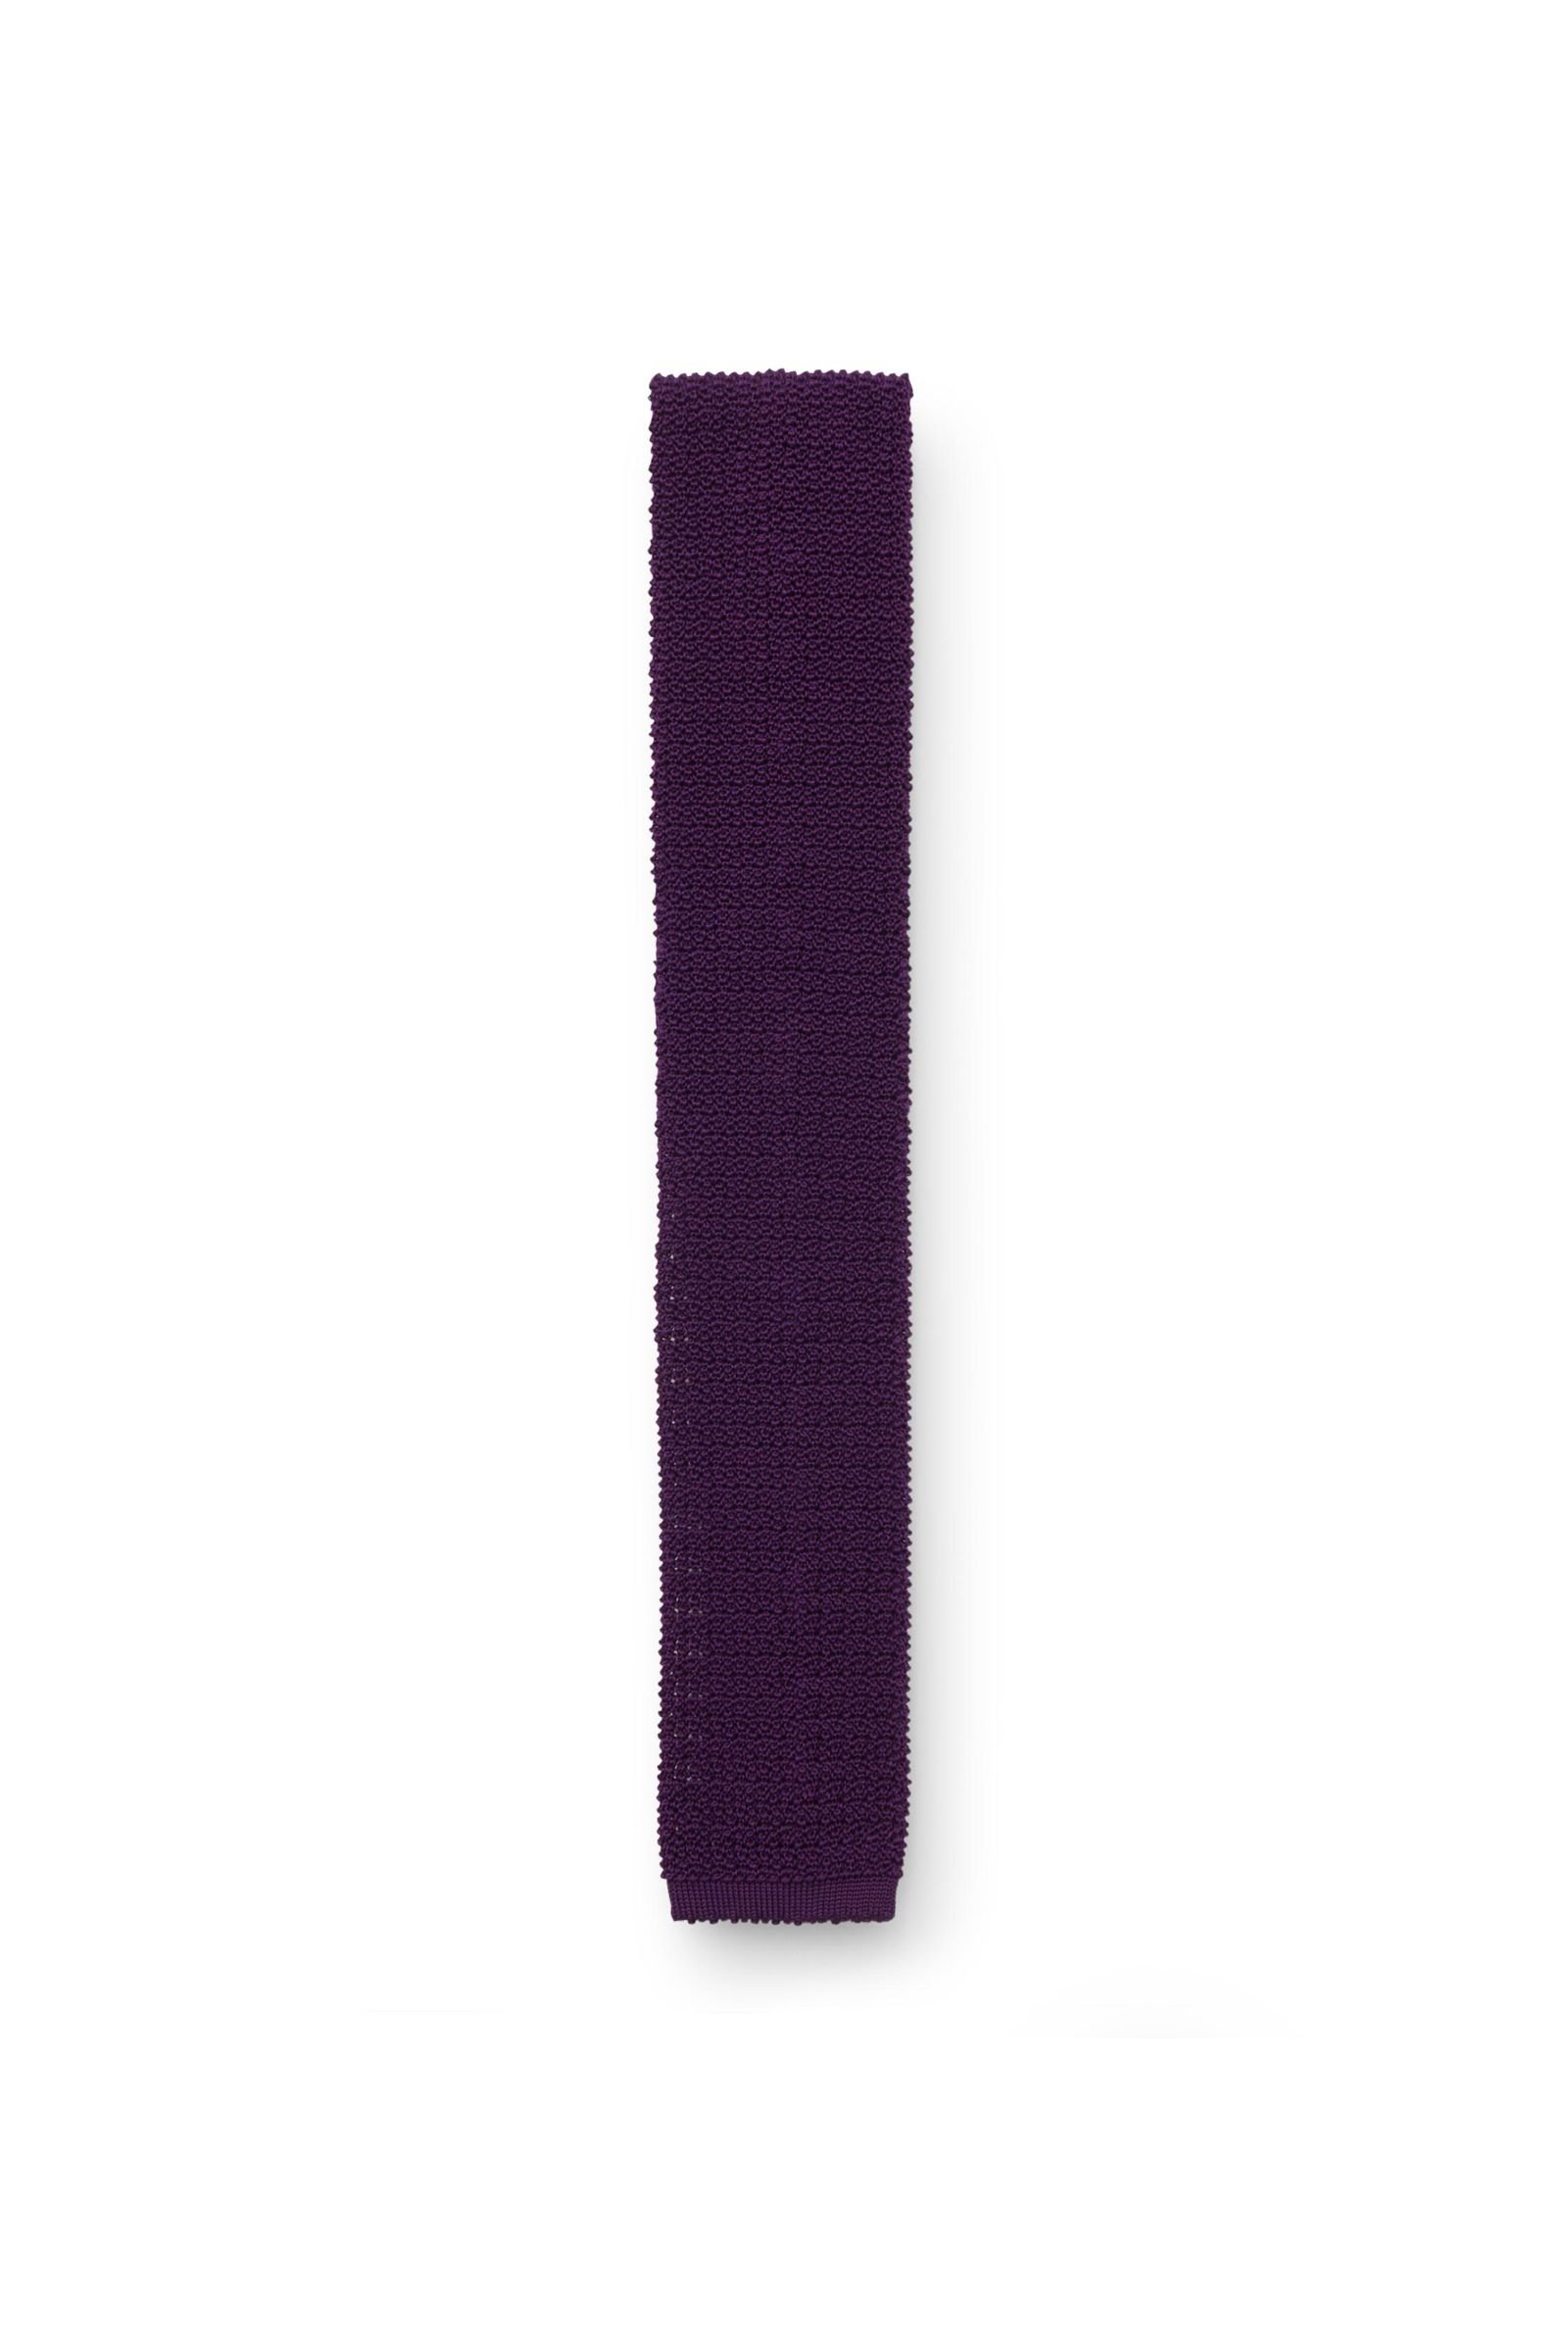 Knitted silk tie purple